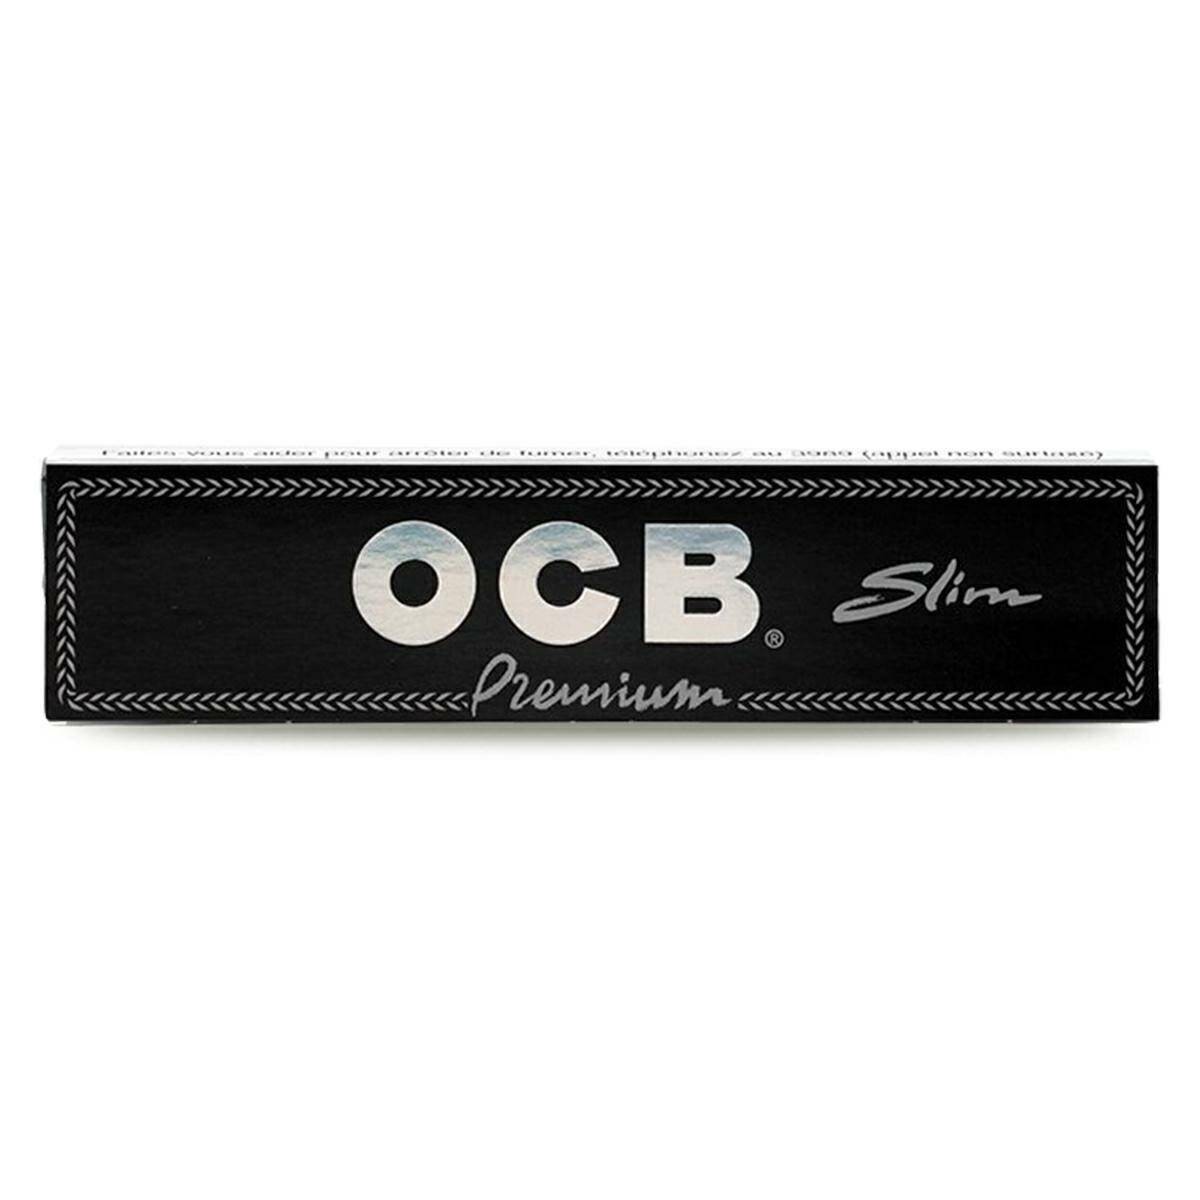 OCB Slim Premium (Photo 1)